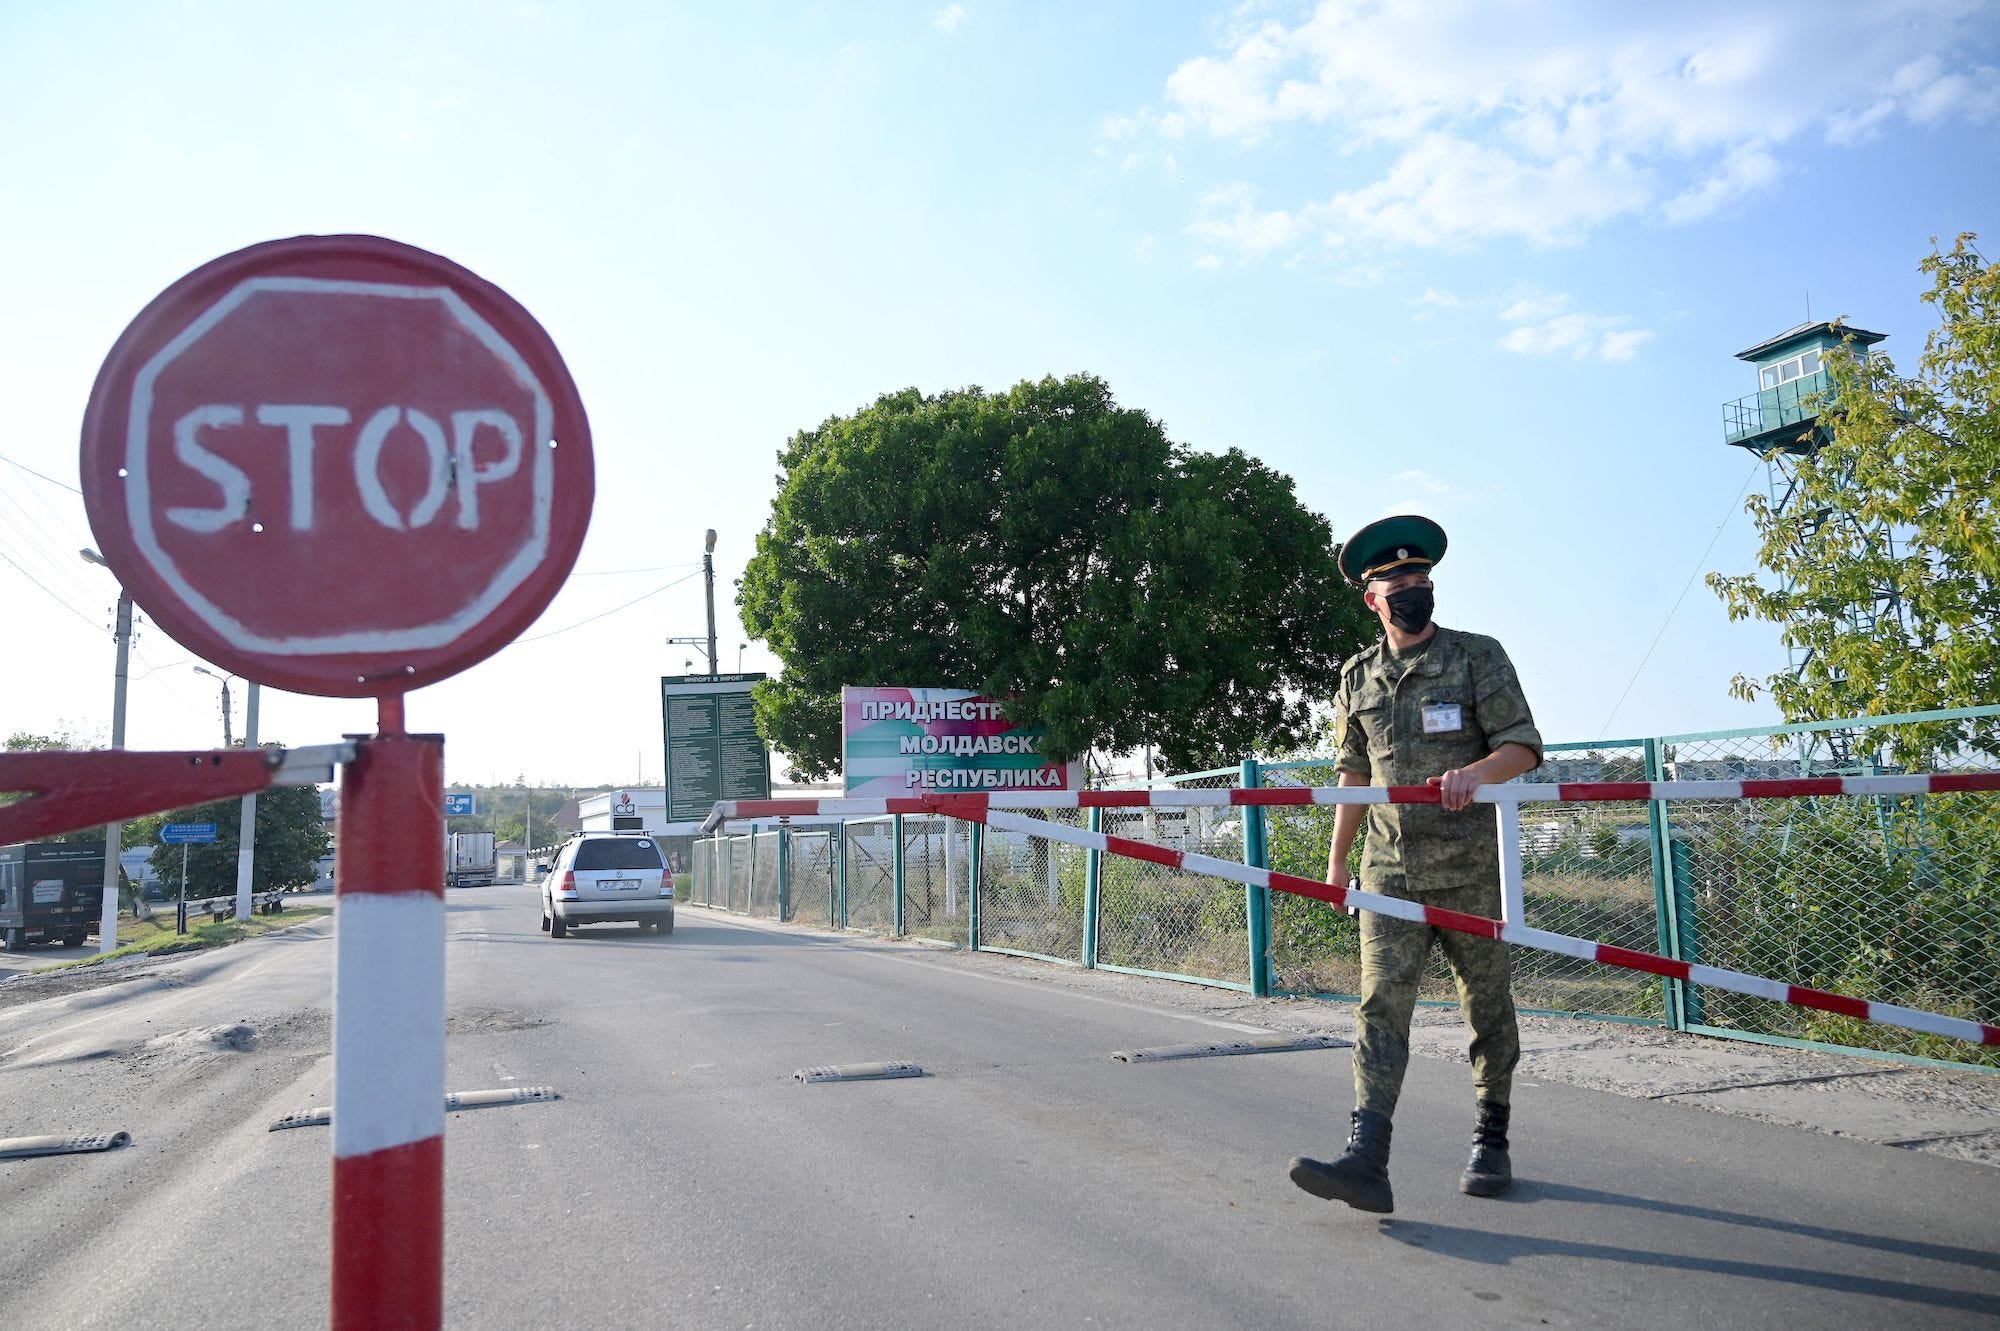 Pervomaysk Transnistrien Moldawien Ukraine Grenzschutz